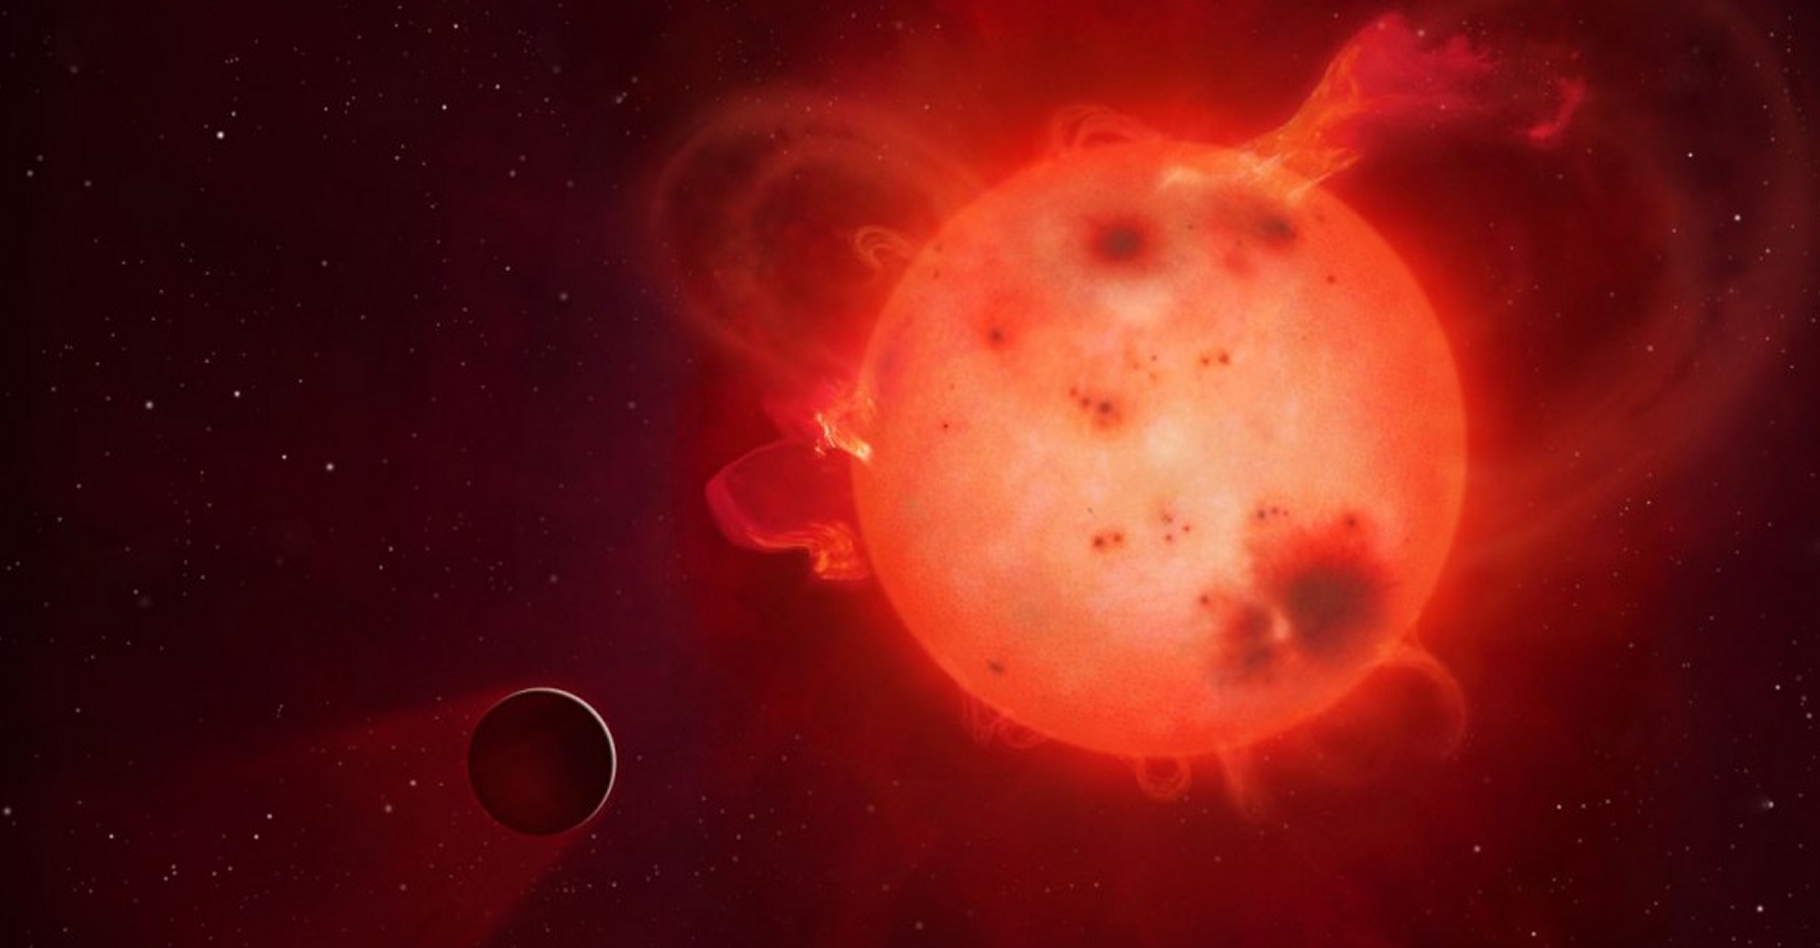 L'exoplanète Kepler-438b (représentée ici dans une vue d'artiste) ressemble beaucoup à la Terre mais elle tourne, à faible distance, autour d'une naine rouge paraissant assez colérique. La vie est-elle possible tout près de ces petites étoiles, largement majoritaires ? Des modèles climatiques répondent oui, mais à certaines conditions. © Mark A. Garlick, university of Warwick